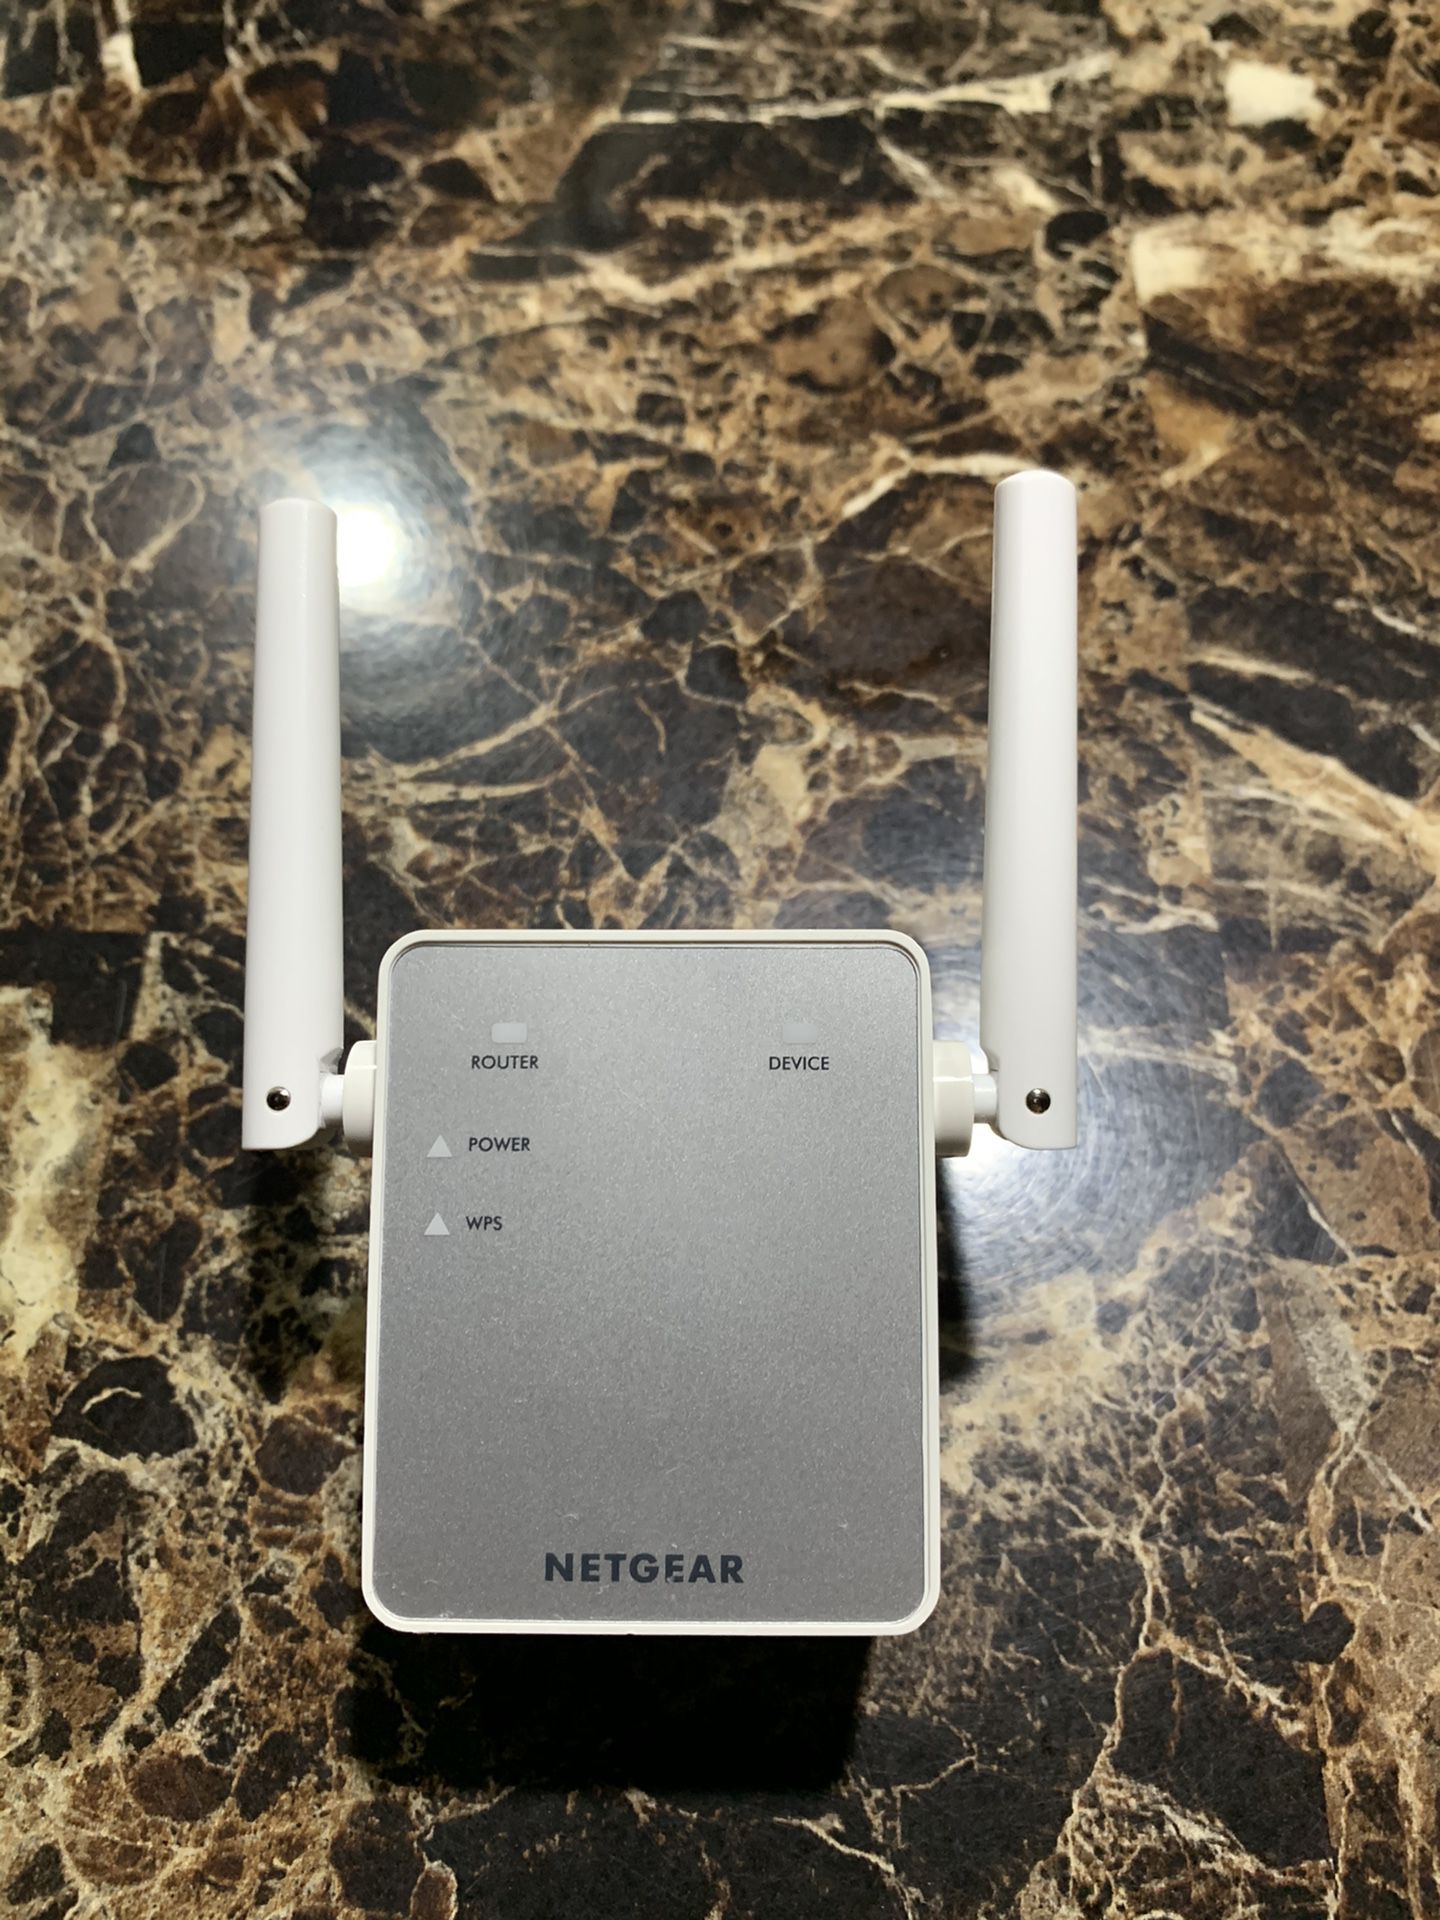 Netgear wifi extender